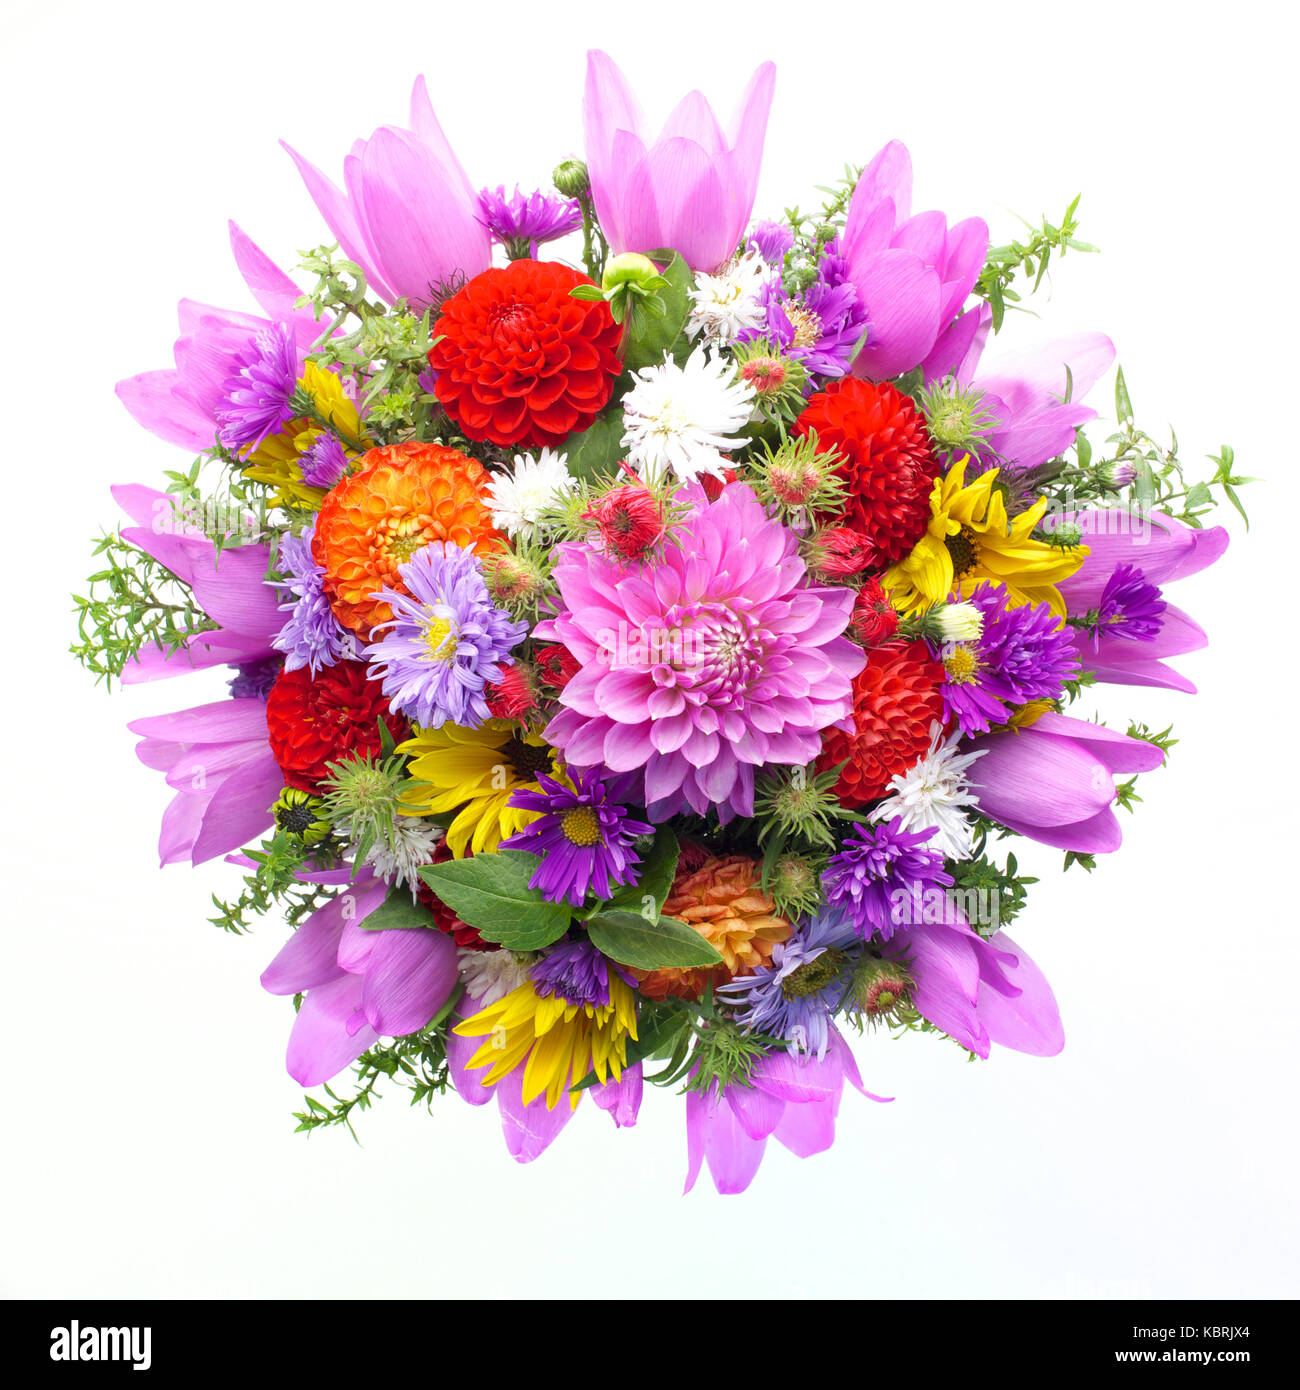 Blumenstrauss Der Blumen Top Anzeigen Isolierten Auf Weissen Hintergrund Stockfotografie Alamy